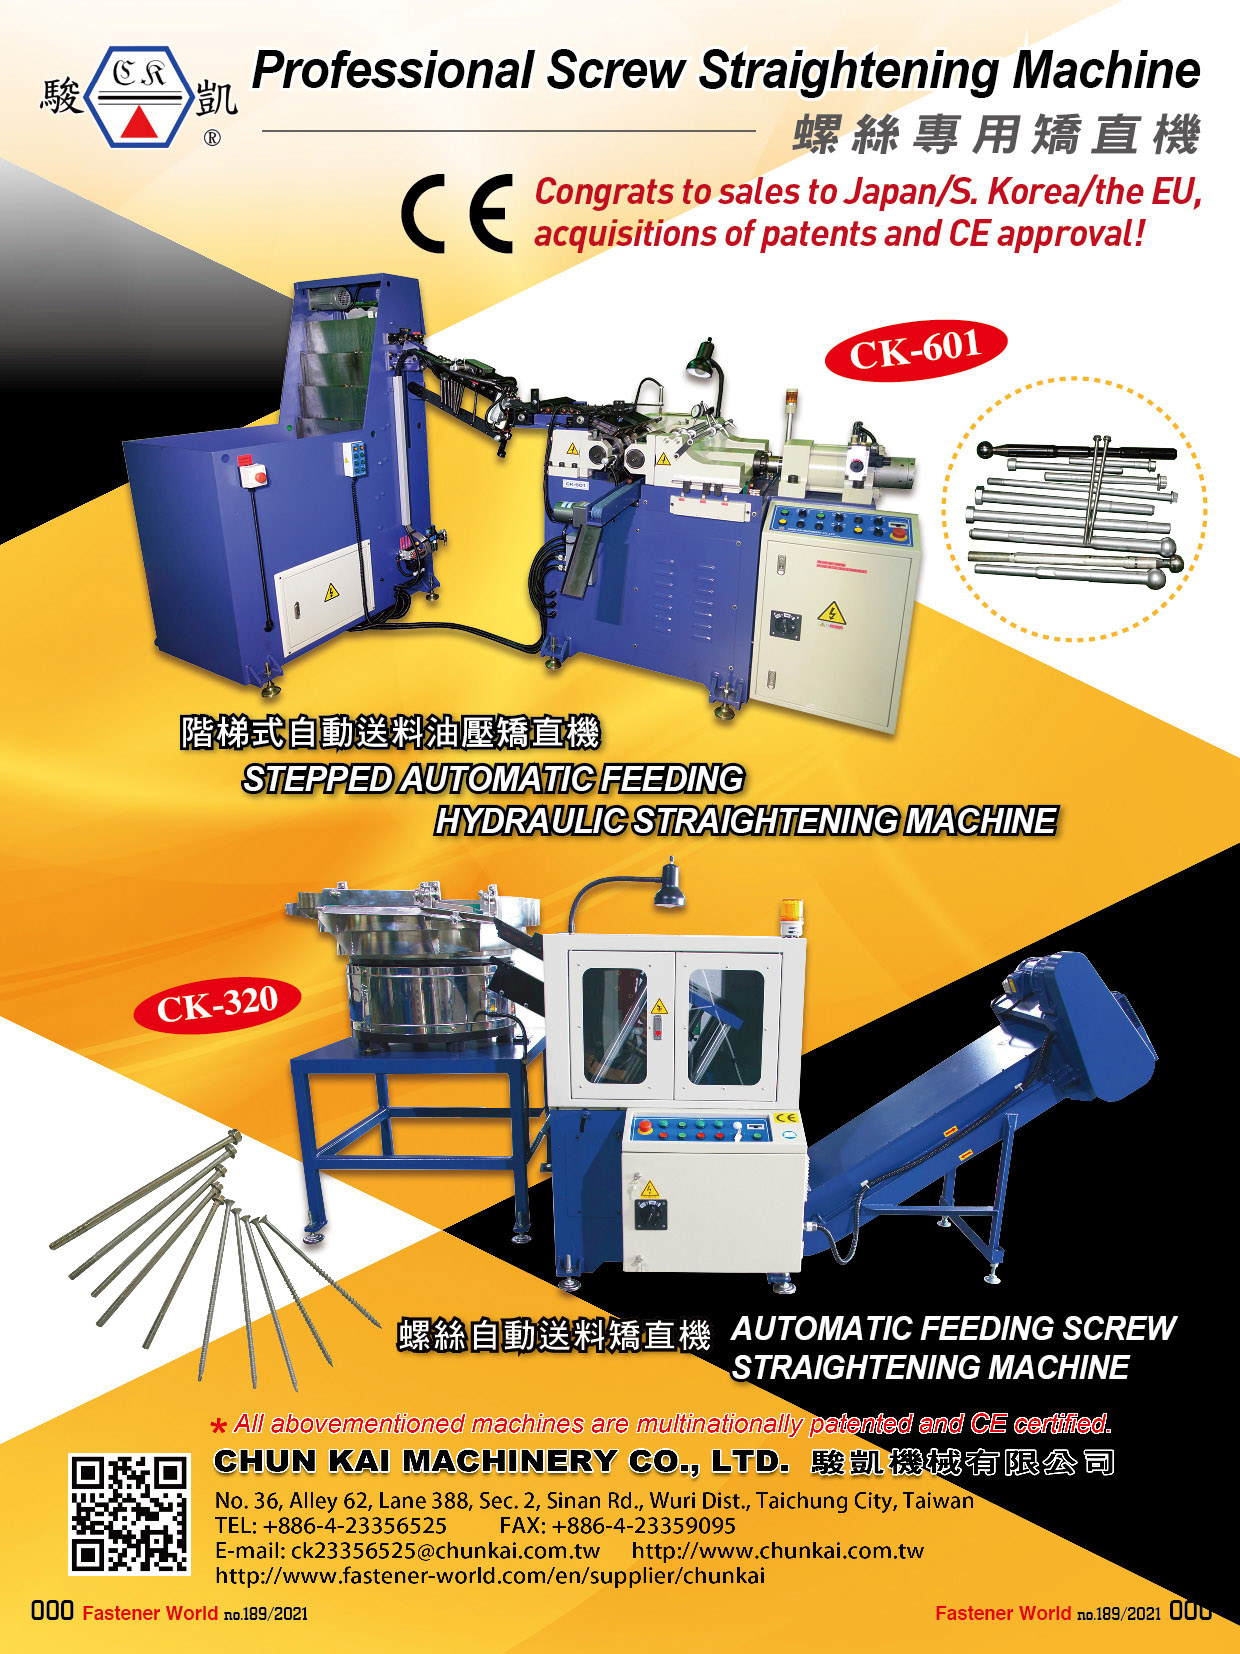 駿凱機械有限公司 , 自動送料油壓矯直機, 螺絲自動送料矯直機 , 矯直機